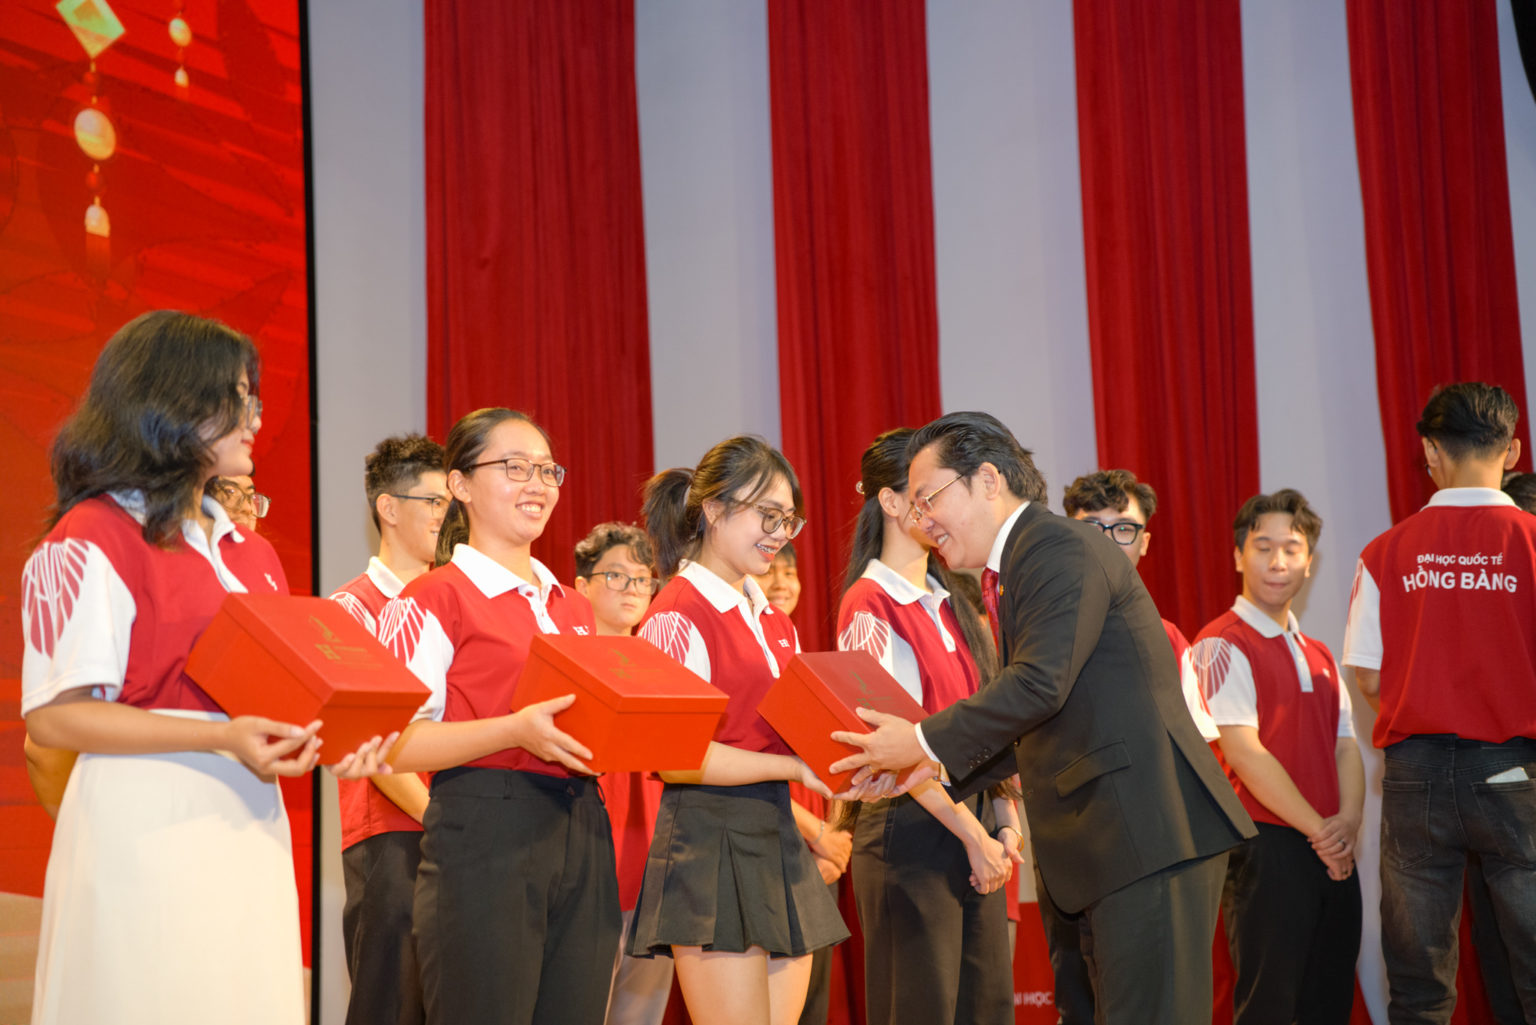 PGS.TS. Nguyễn Hữu Huy Nhựt – Phó Hiệu trưởng HIU tại buổi lễ trao quà tết cho sinh viên HIU